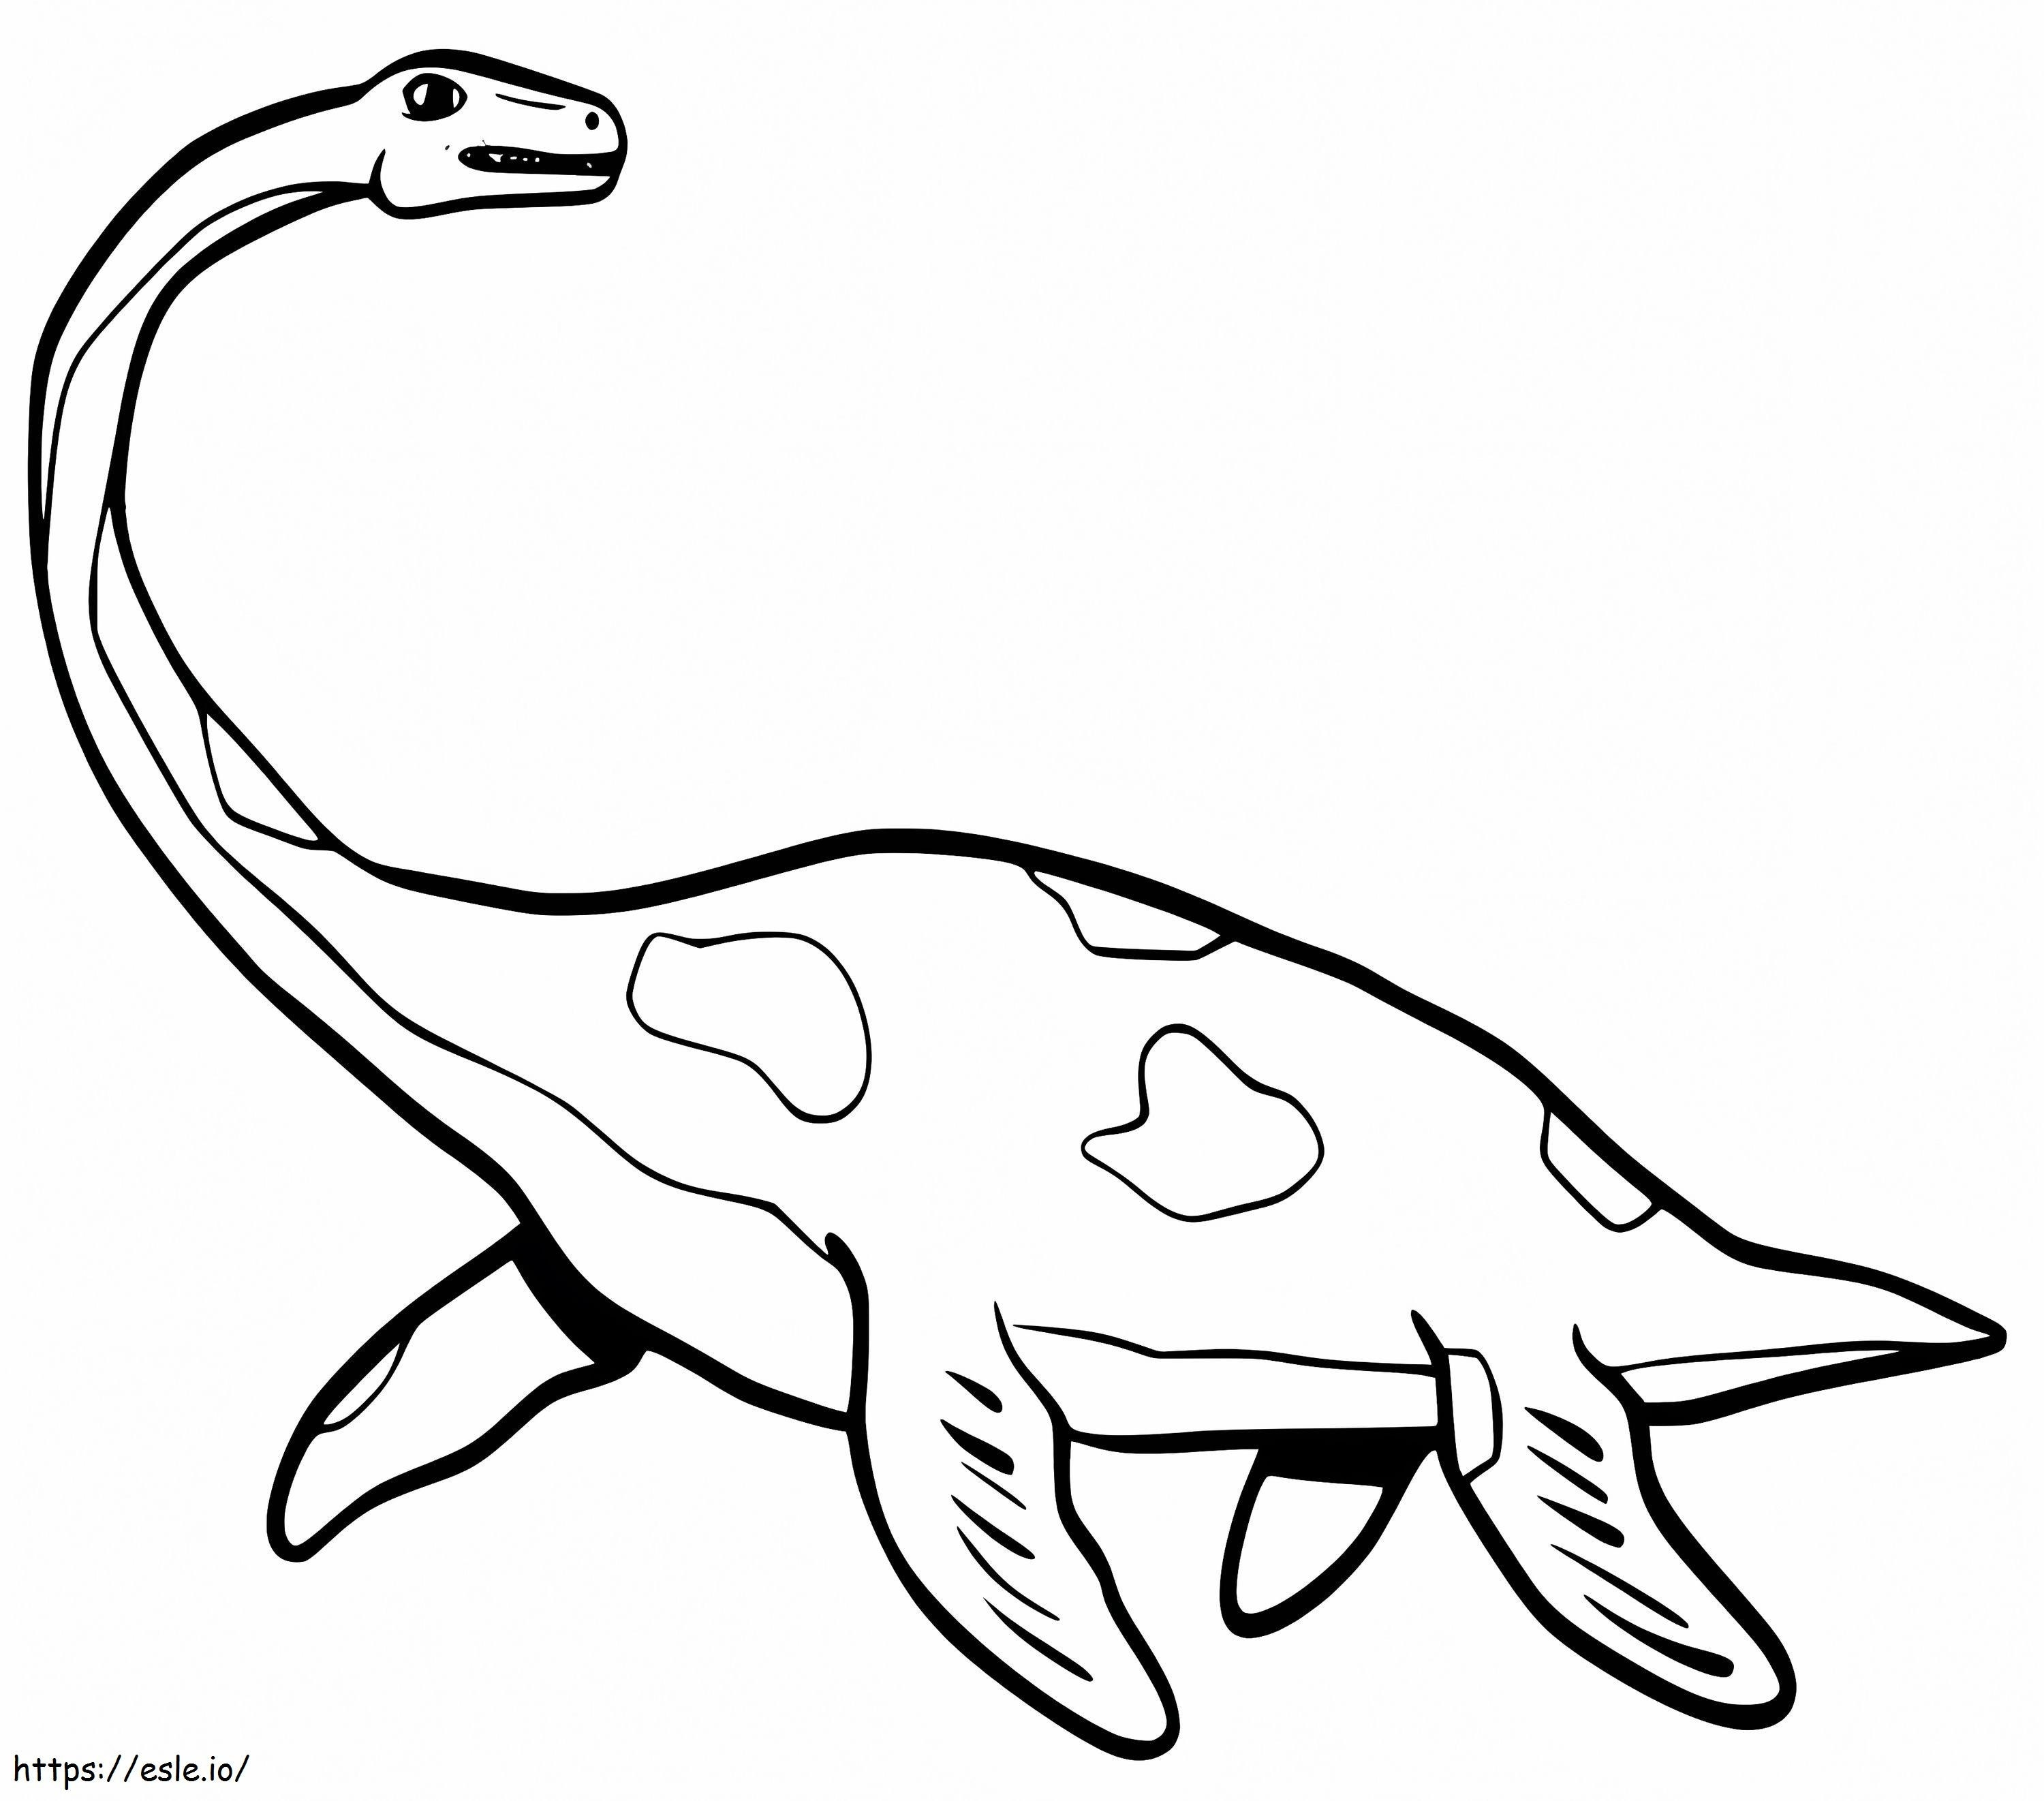 Dinozor Plesiosaurus boyama